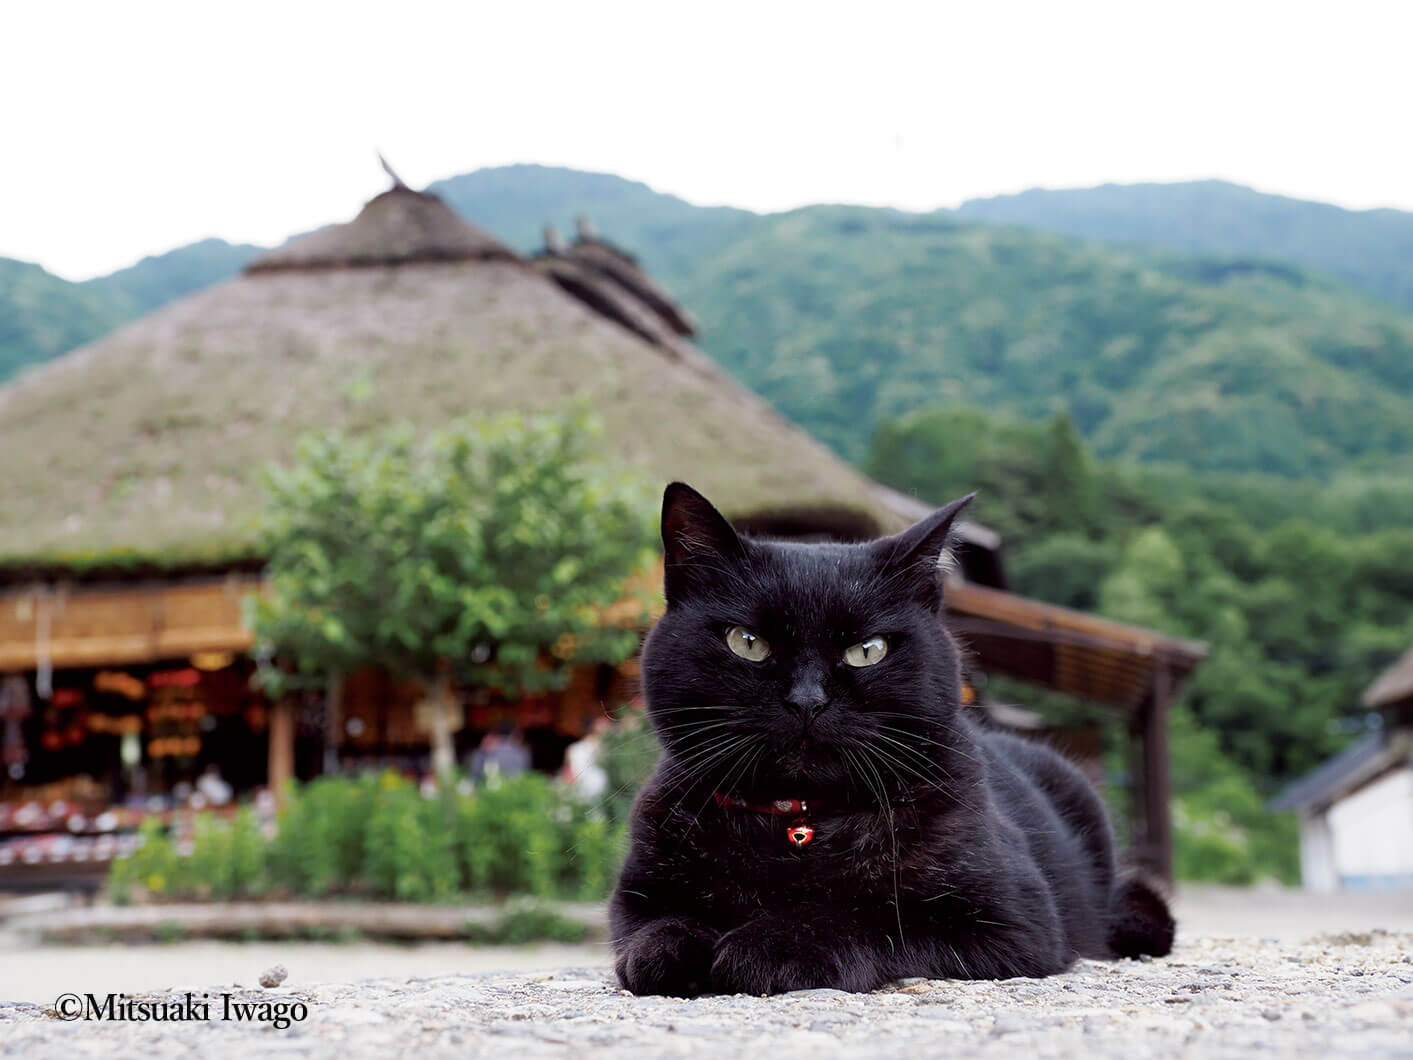 福島県南会津郡で撮影された猫の写真 by 『岩合光昭の日本ねこ歩き』